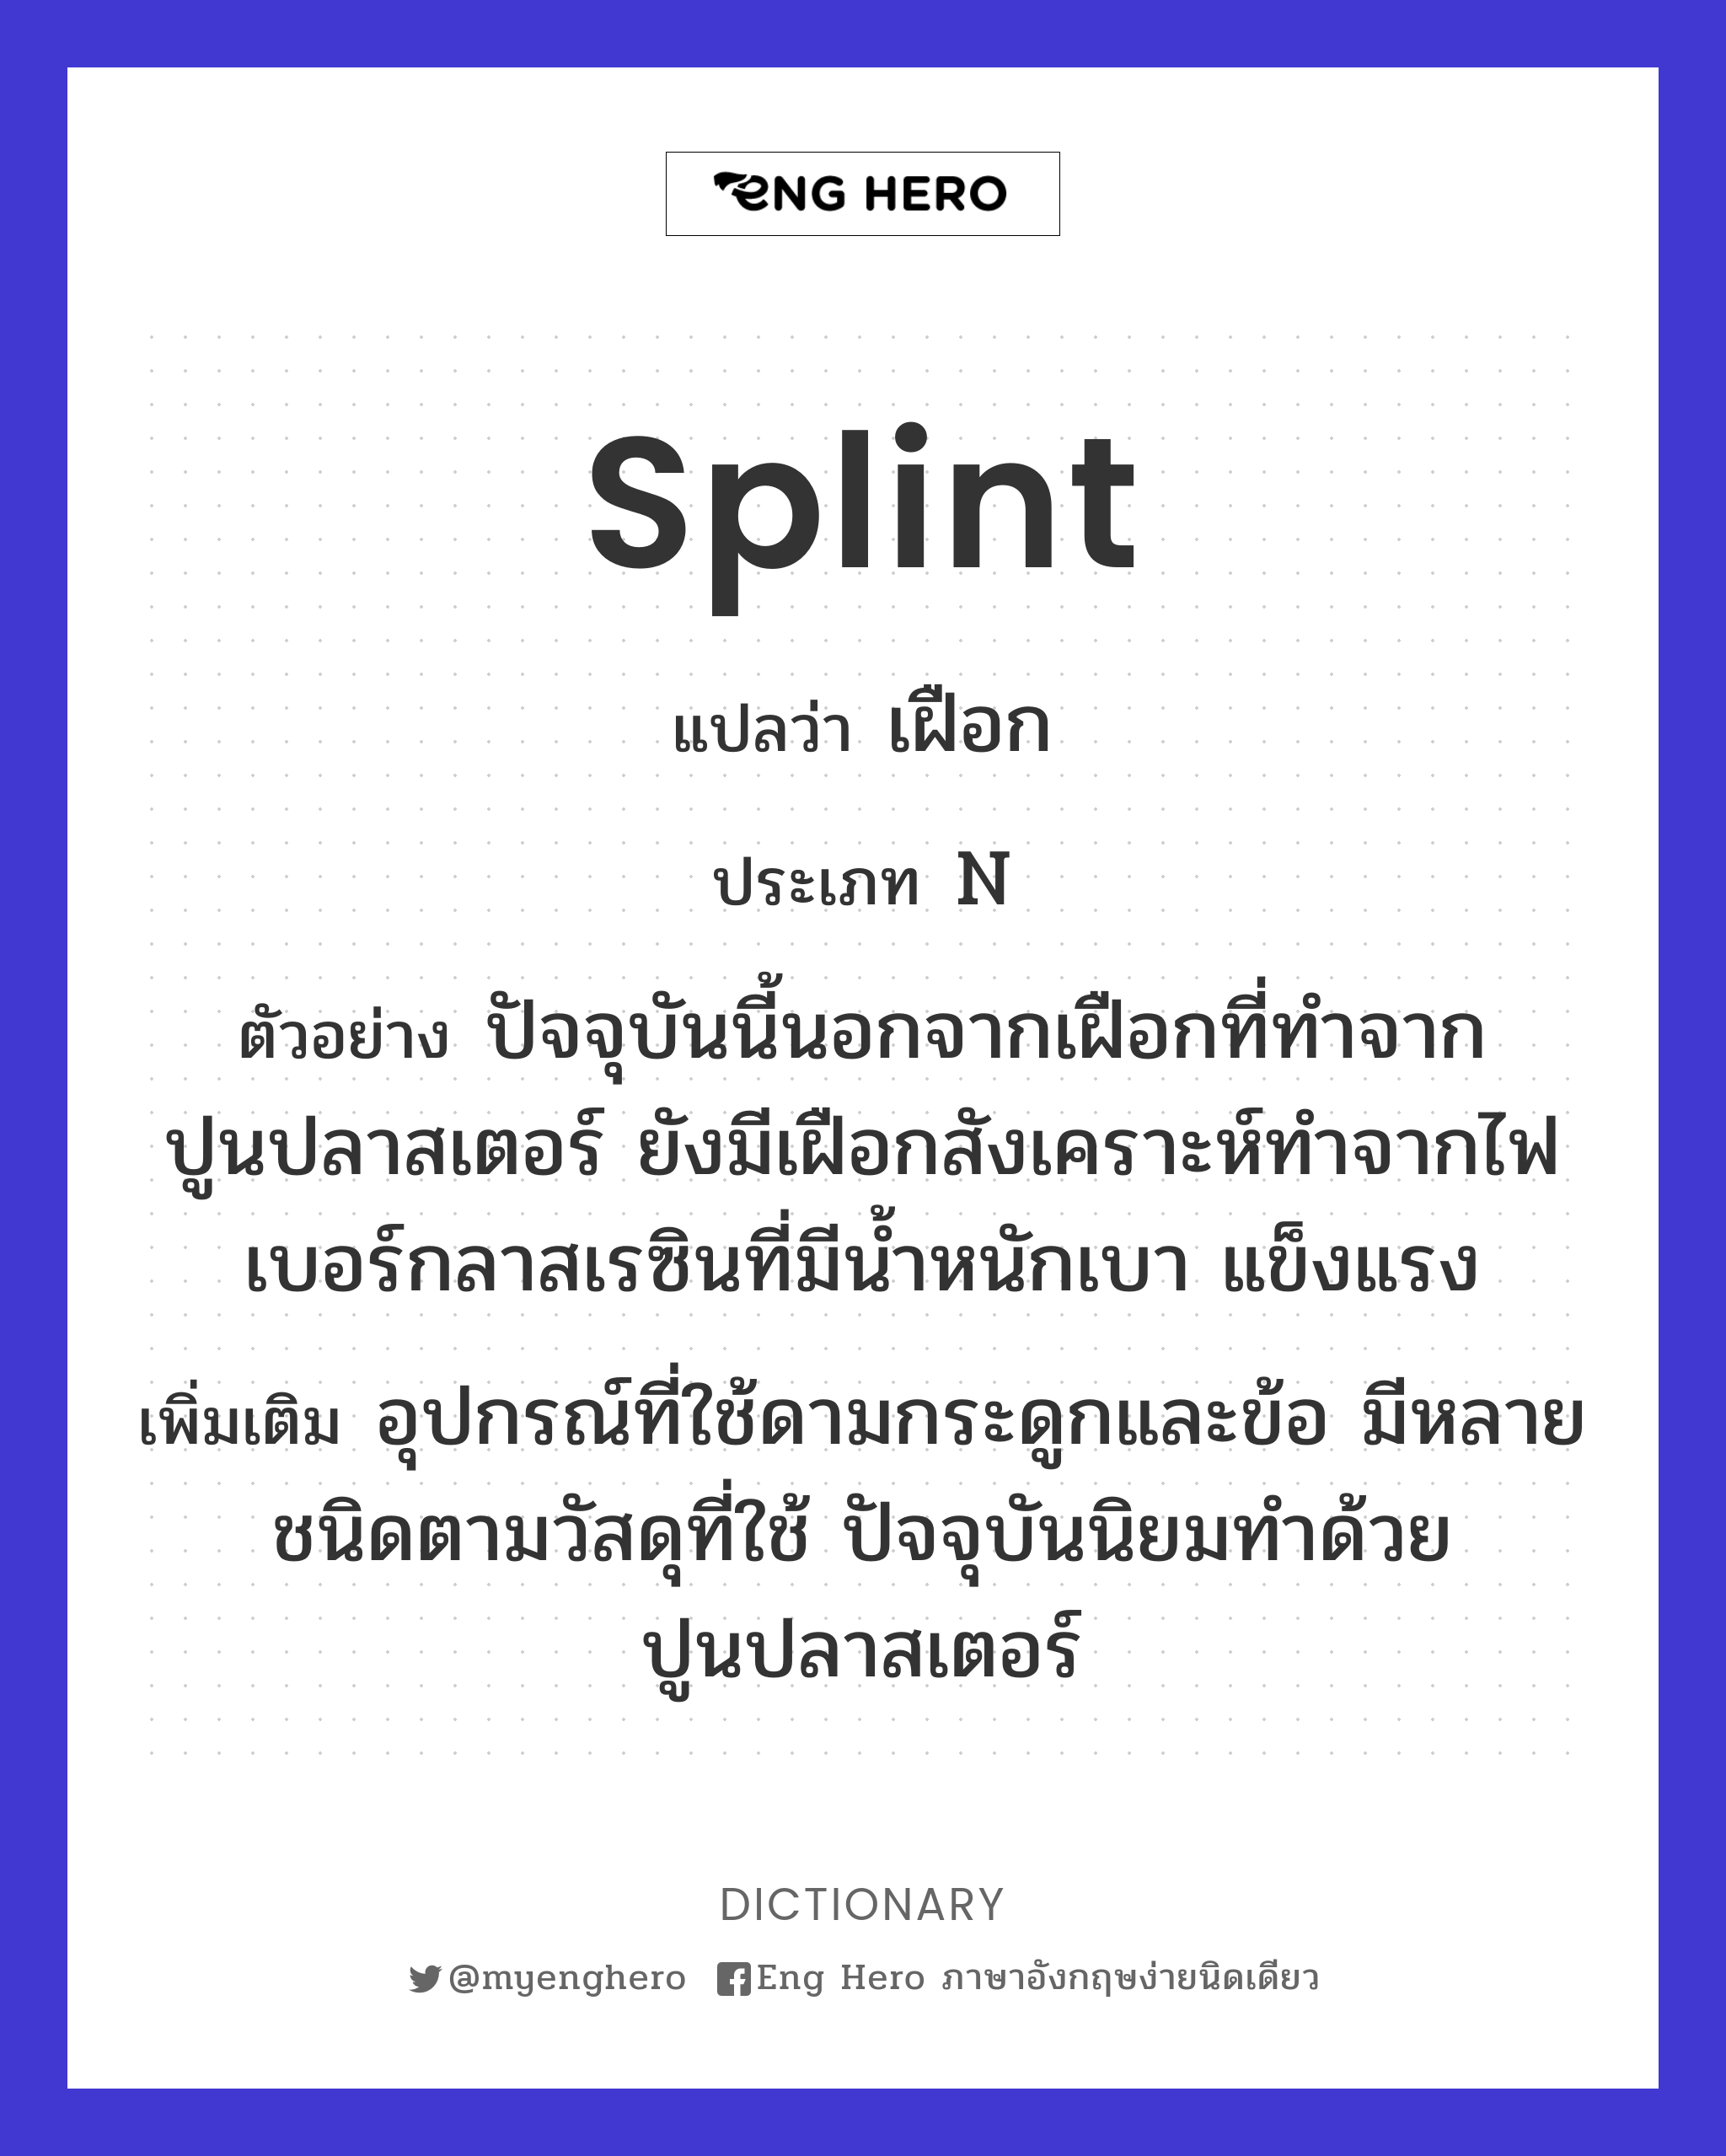 splint